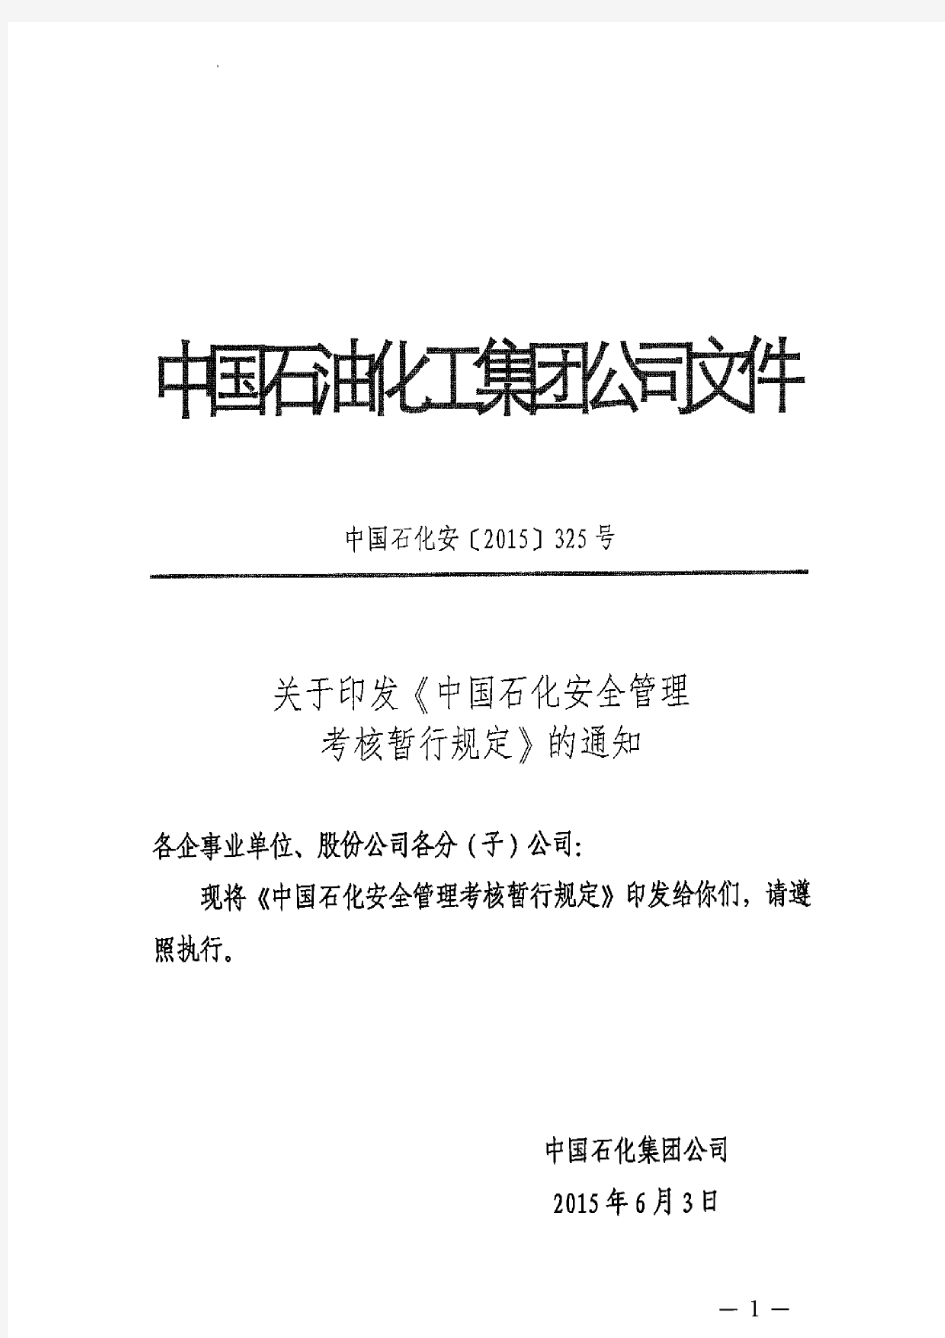 中石化安[2015]325号《中石化安全管理考核暂行规定》